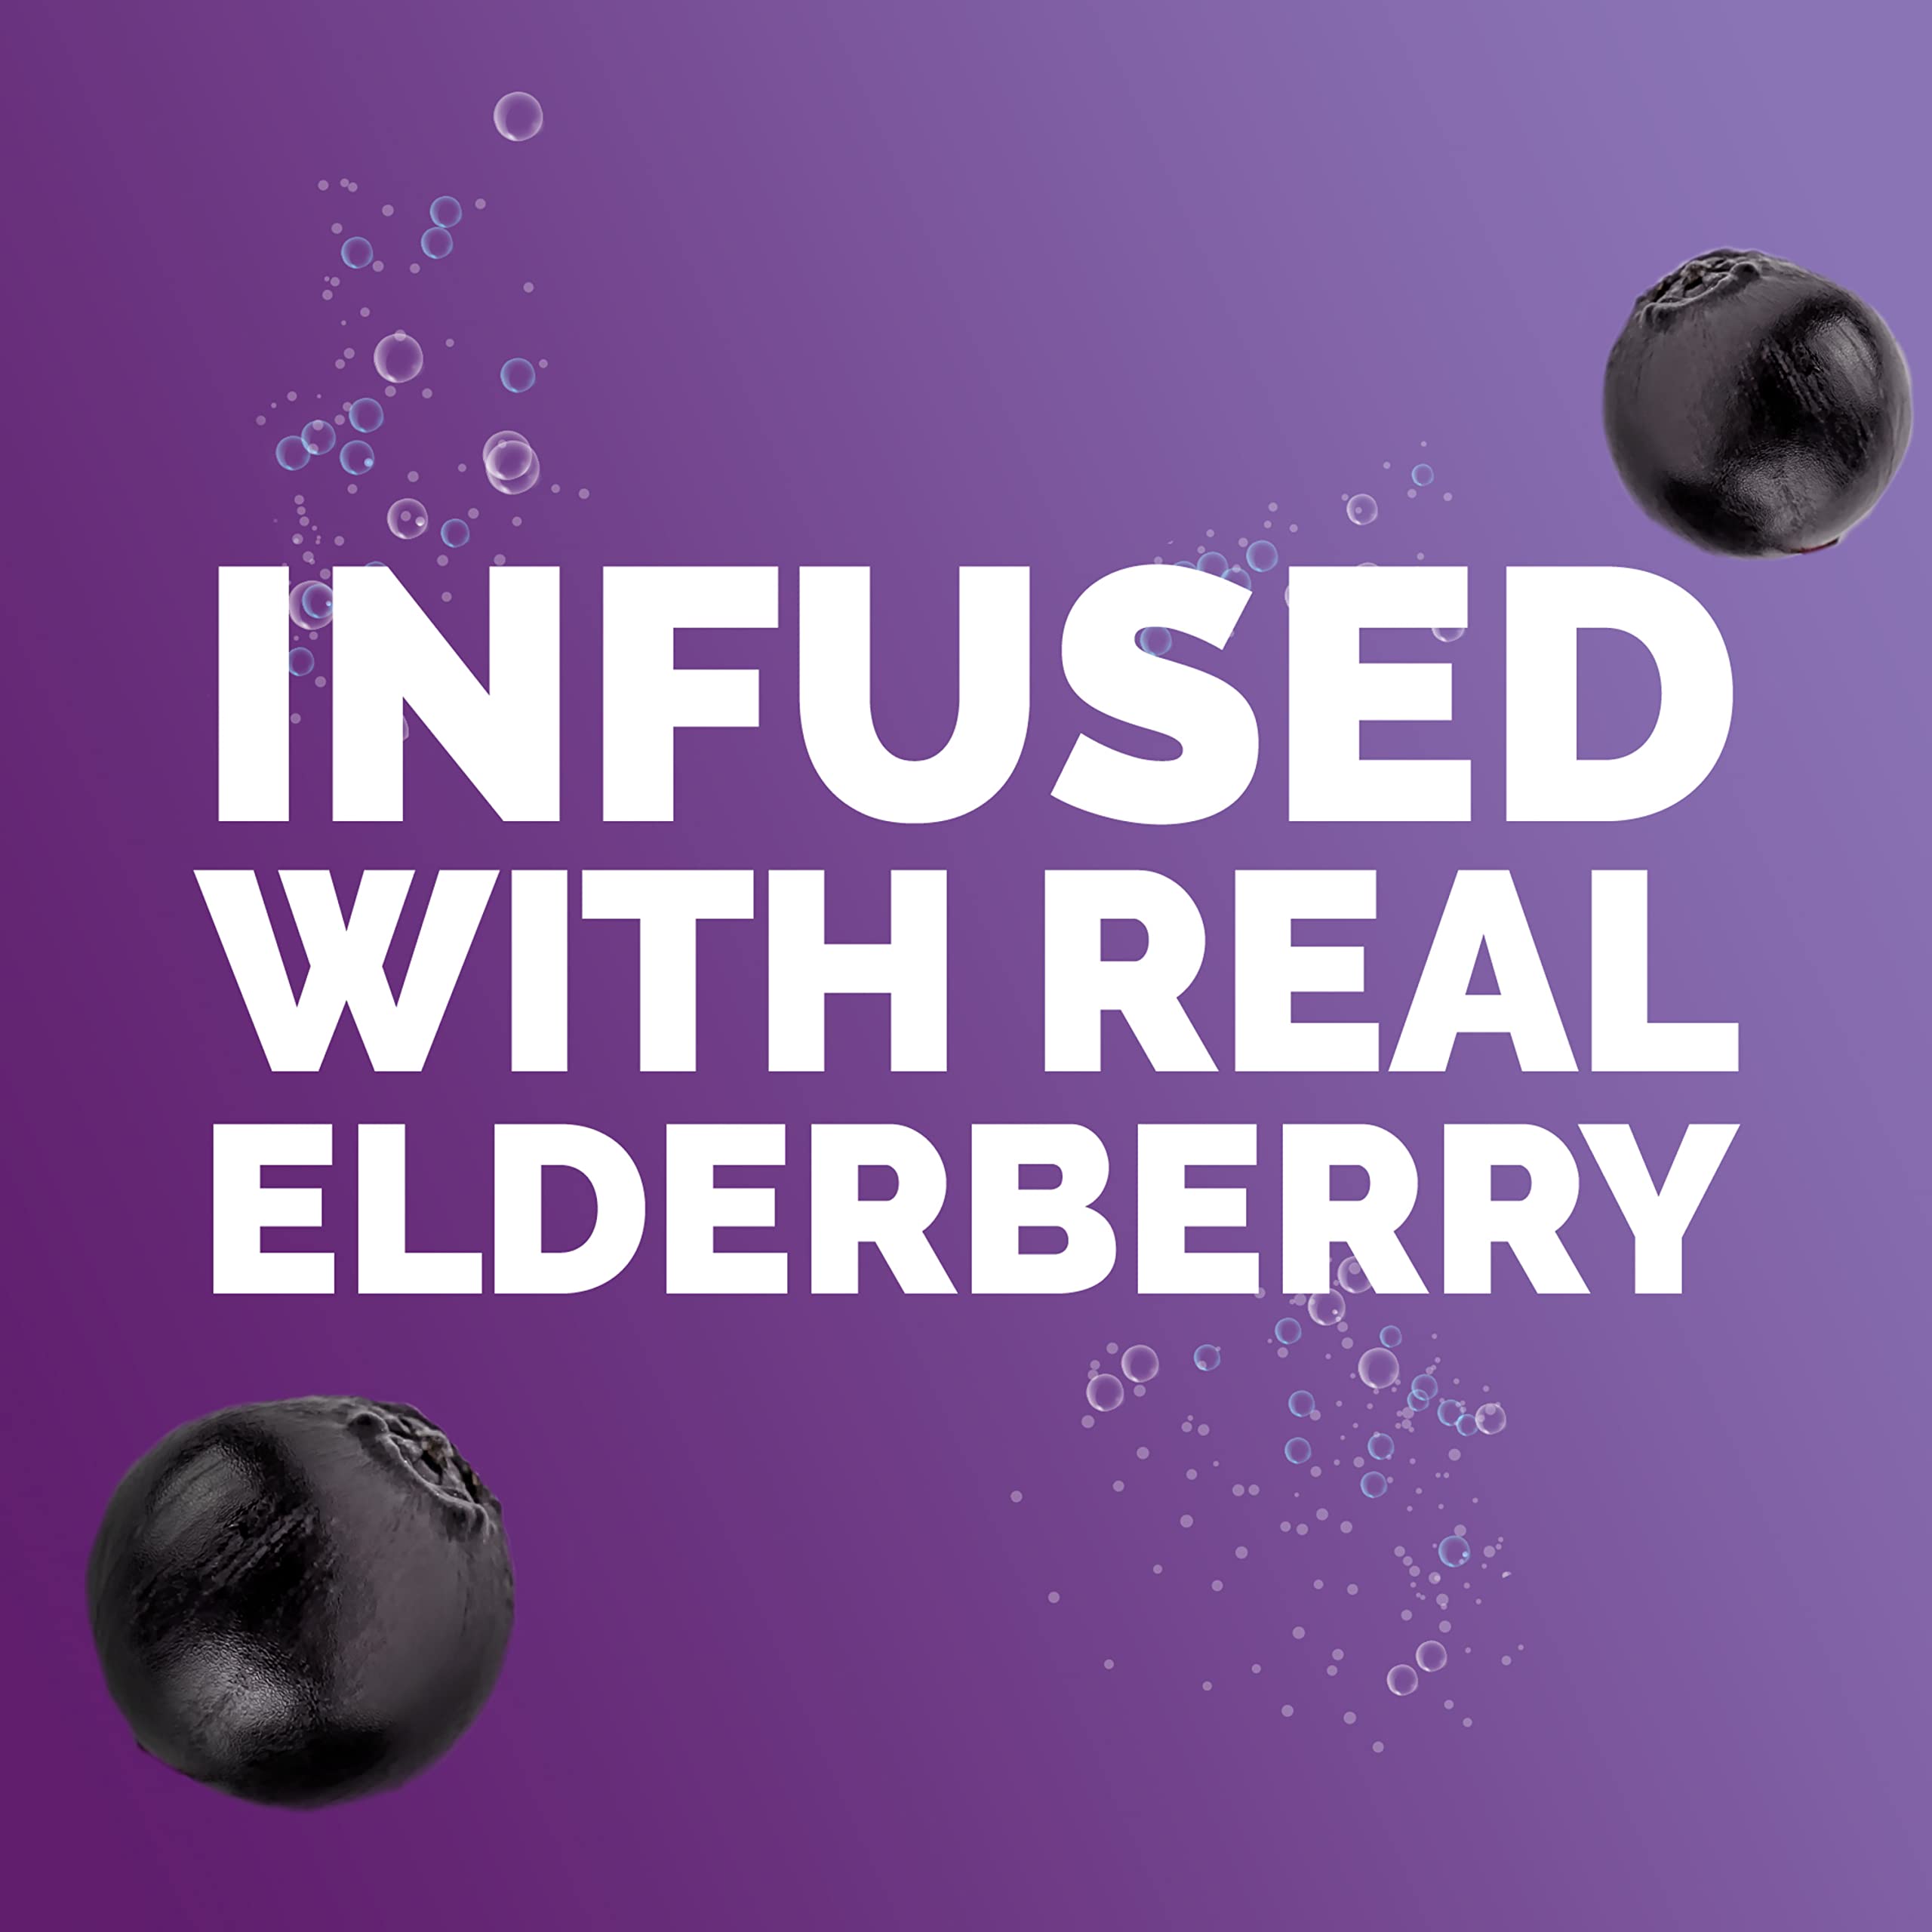 Emergen-C Immune+ Vitamin C 1000mg (18 Count, Elderberry) Dietary Supplement Fizzy Drink Mix Powder Packets